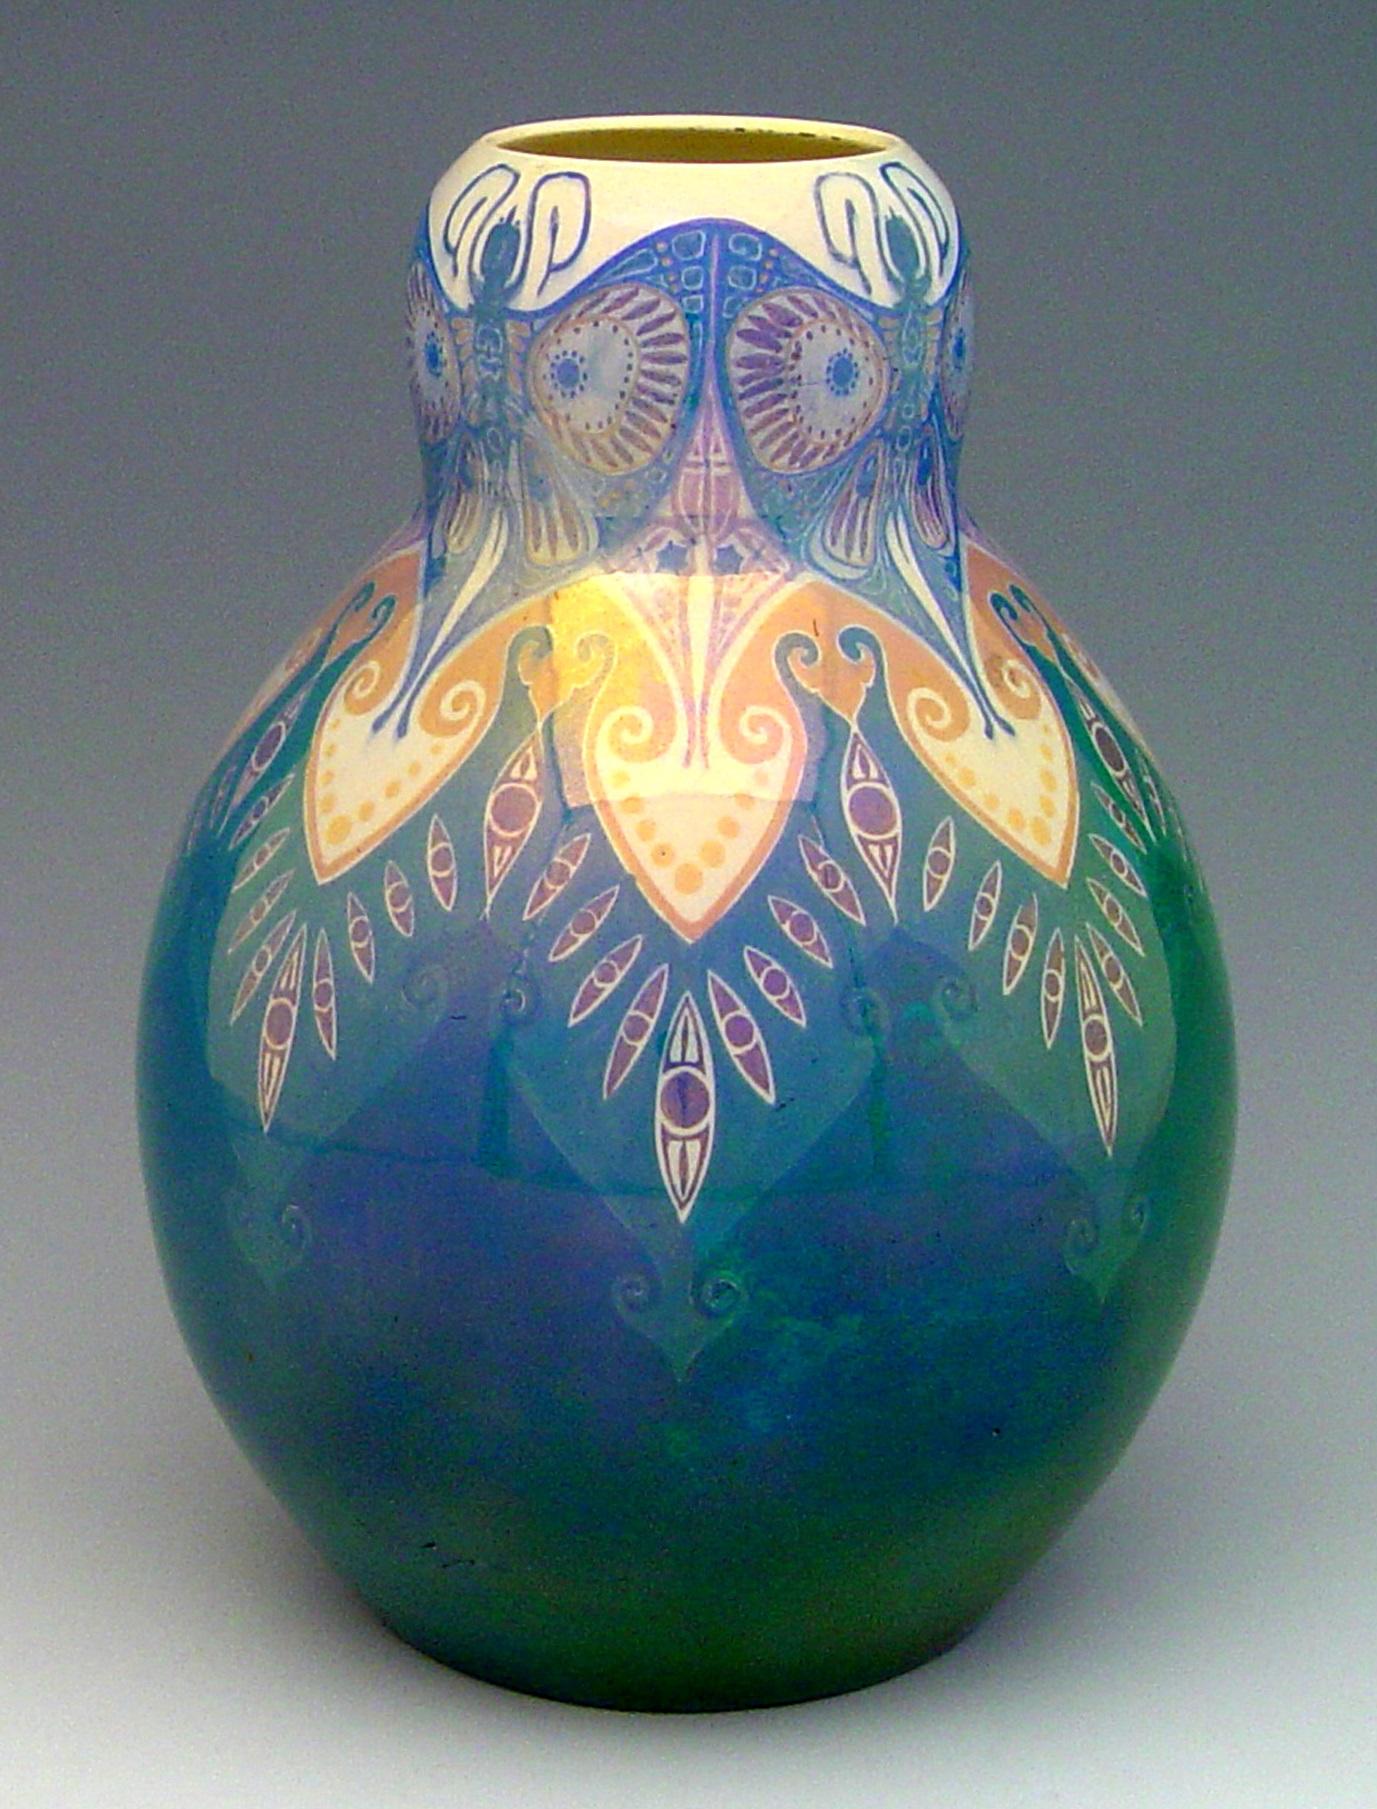 534: Vaas, model 24, gedecoreerd met gestileerde vlinders onder lusterglazuur, ontwerp Chris Lanooy, NV Haga, Purmerend 1904-1907